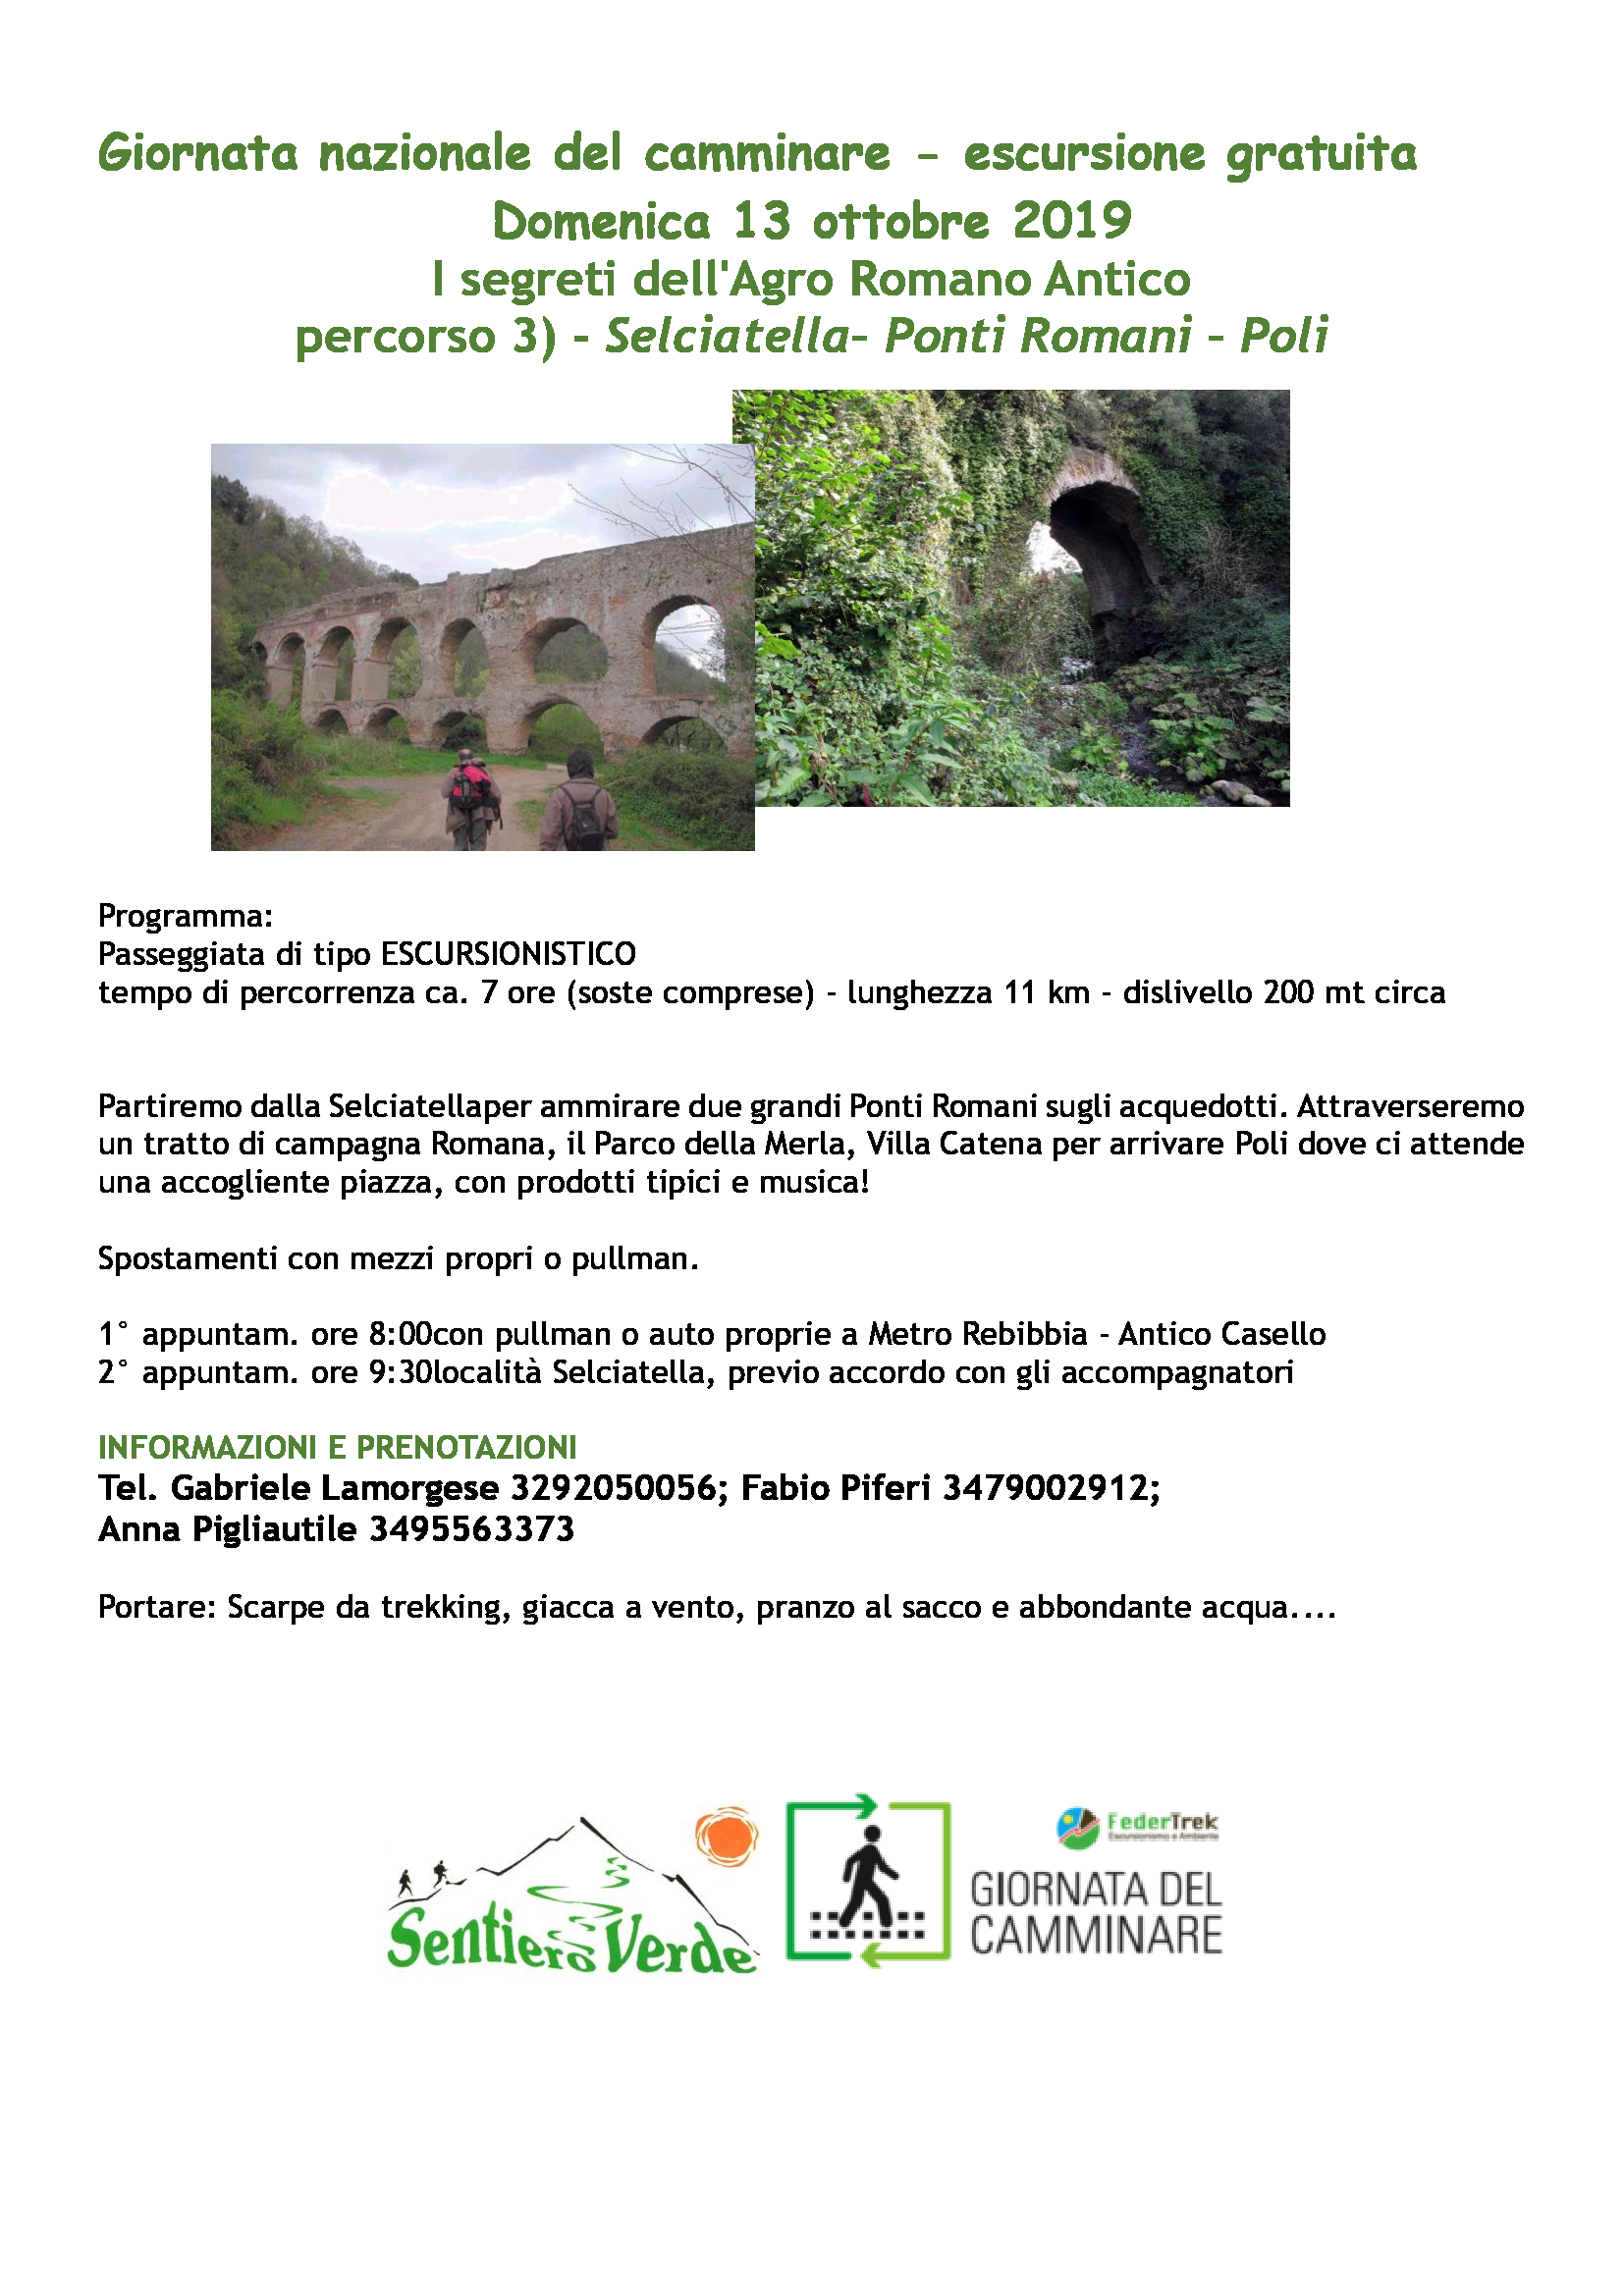 I Segreti dell'Agro Romano Antico: Selciatella - Ponti Romani - Poli